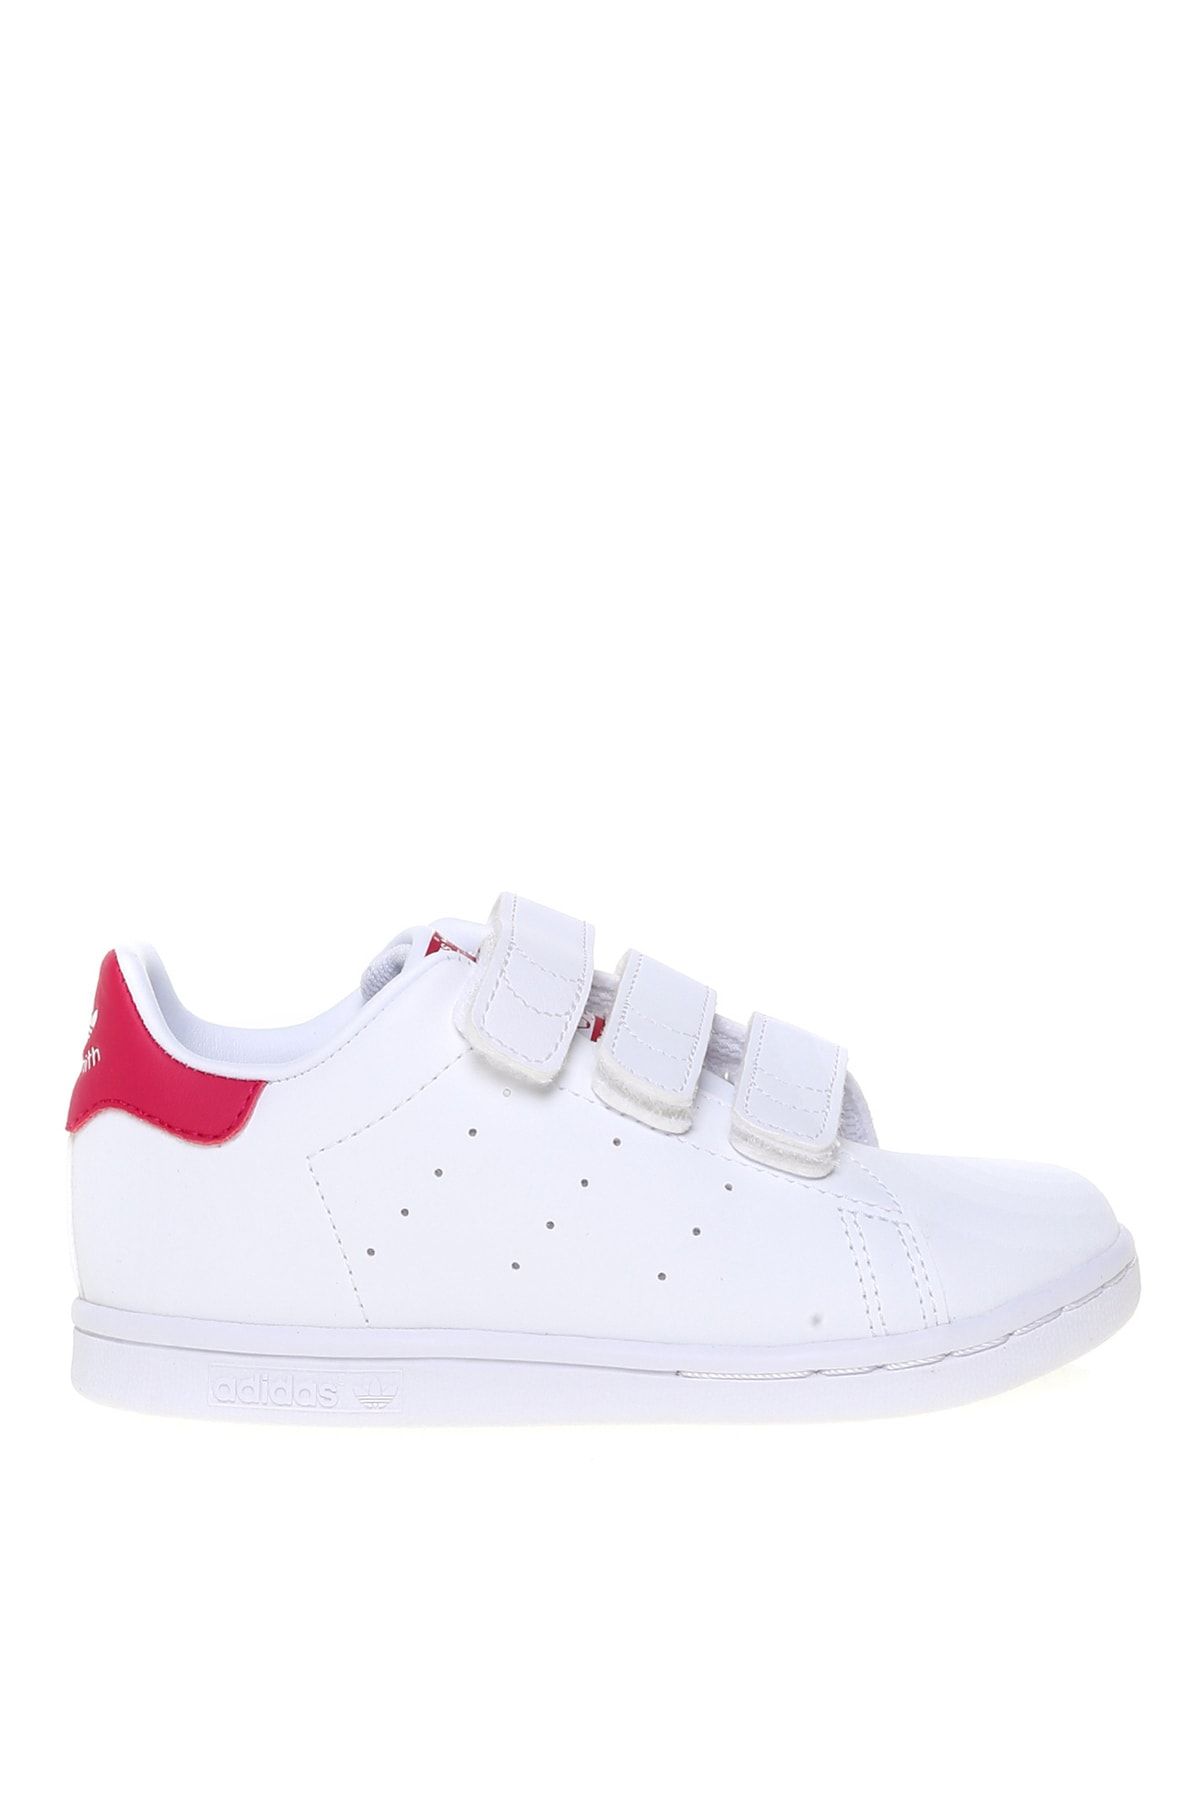 adidas Fx7538 Stan Smıth Cf I Beyaz - Pembe Kadın Yürüyüş Ayakkabısı